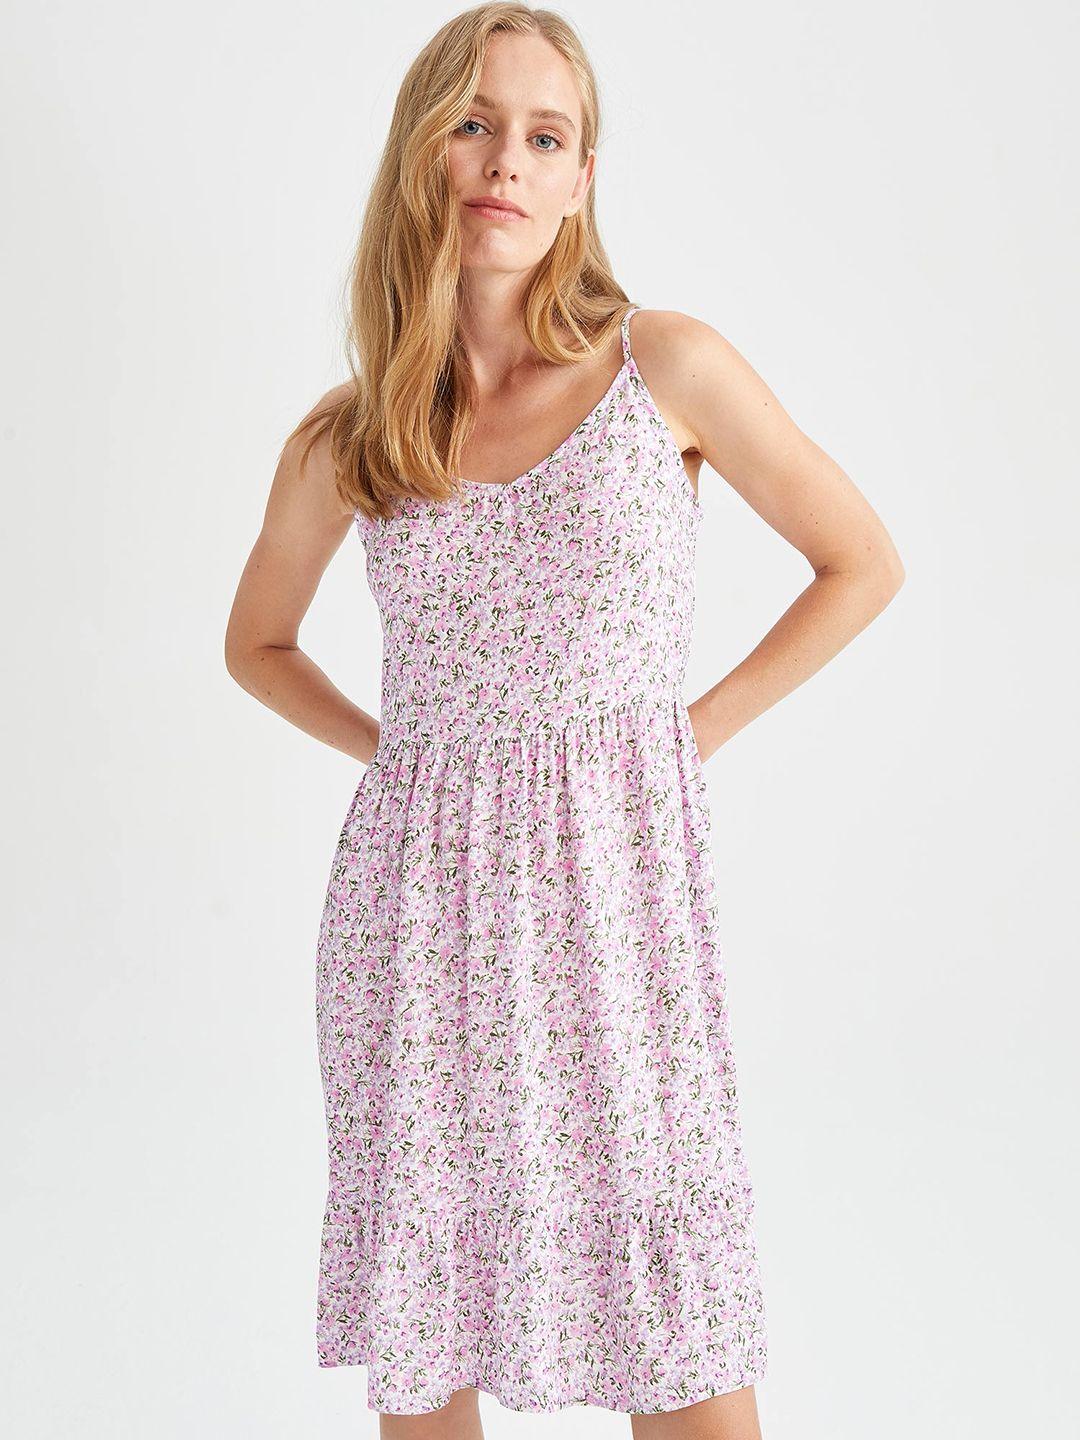 defacto lavender & off white floral print a-line dress